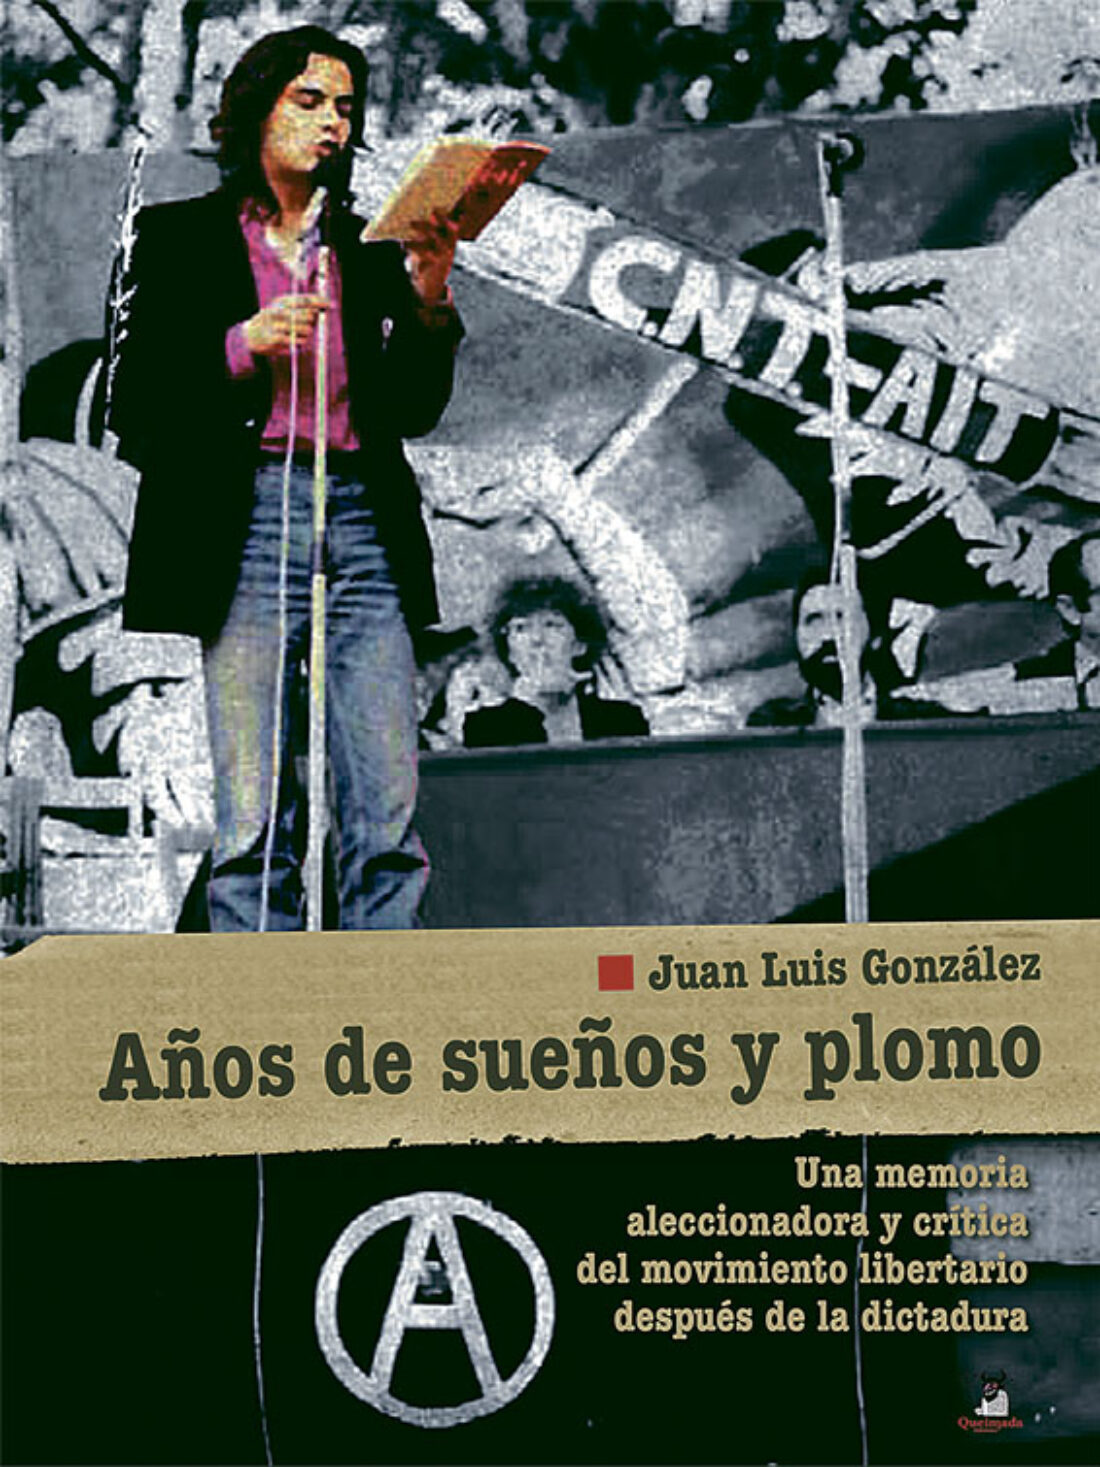 Presentación del libro «Años de sueños y plomo» de Juan Luis González